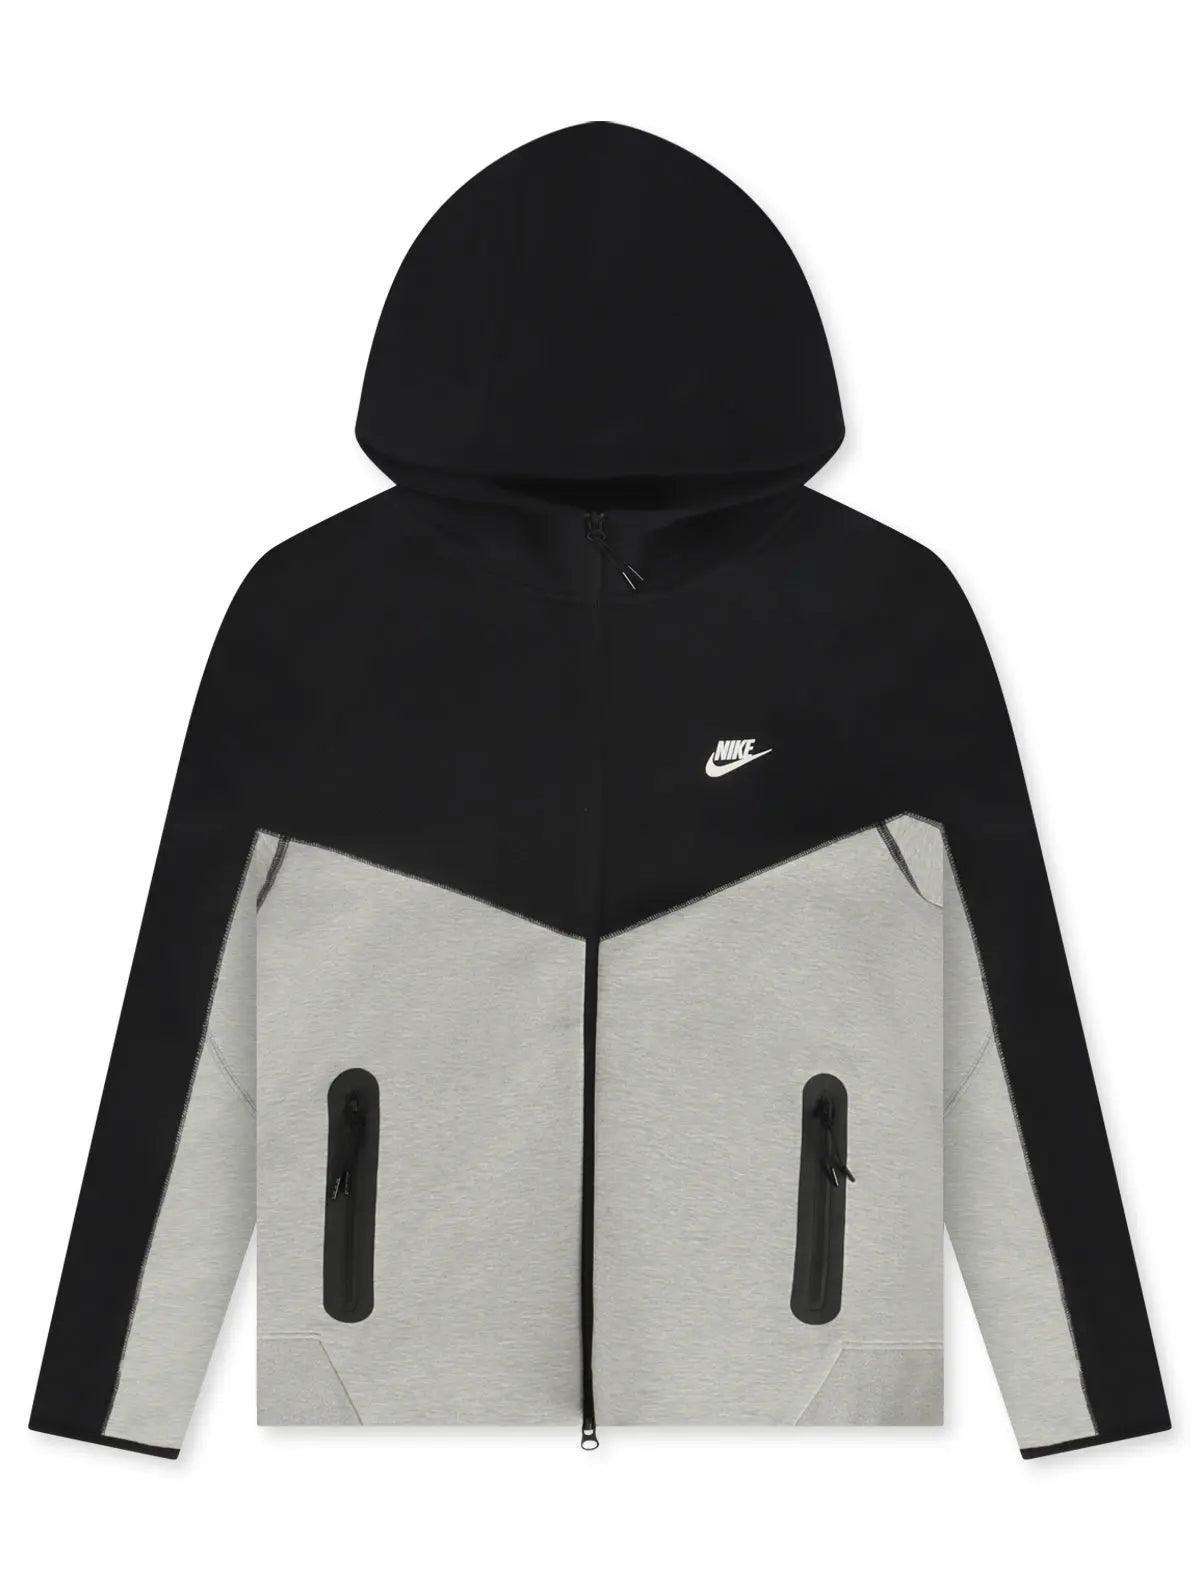 Nike Sportswear Tech Fleece Hoodie - DK GREY HEATHER/BLACK - Civilized  Nation - Official Site